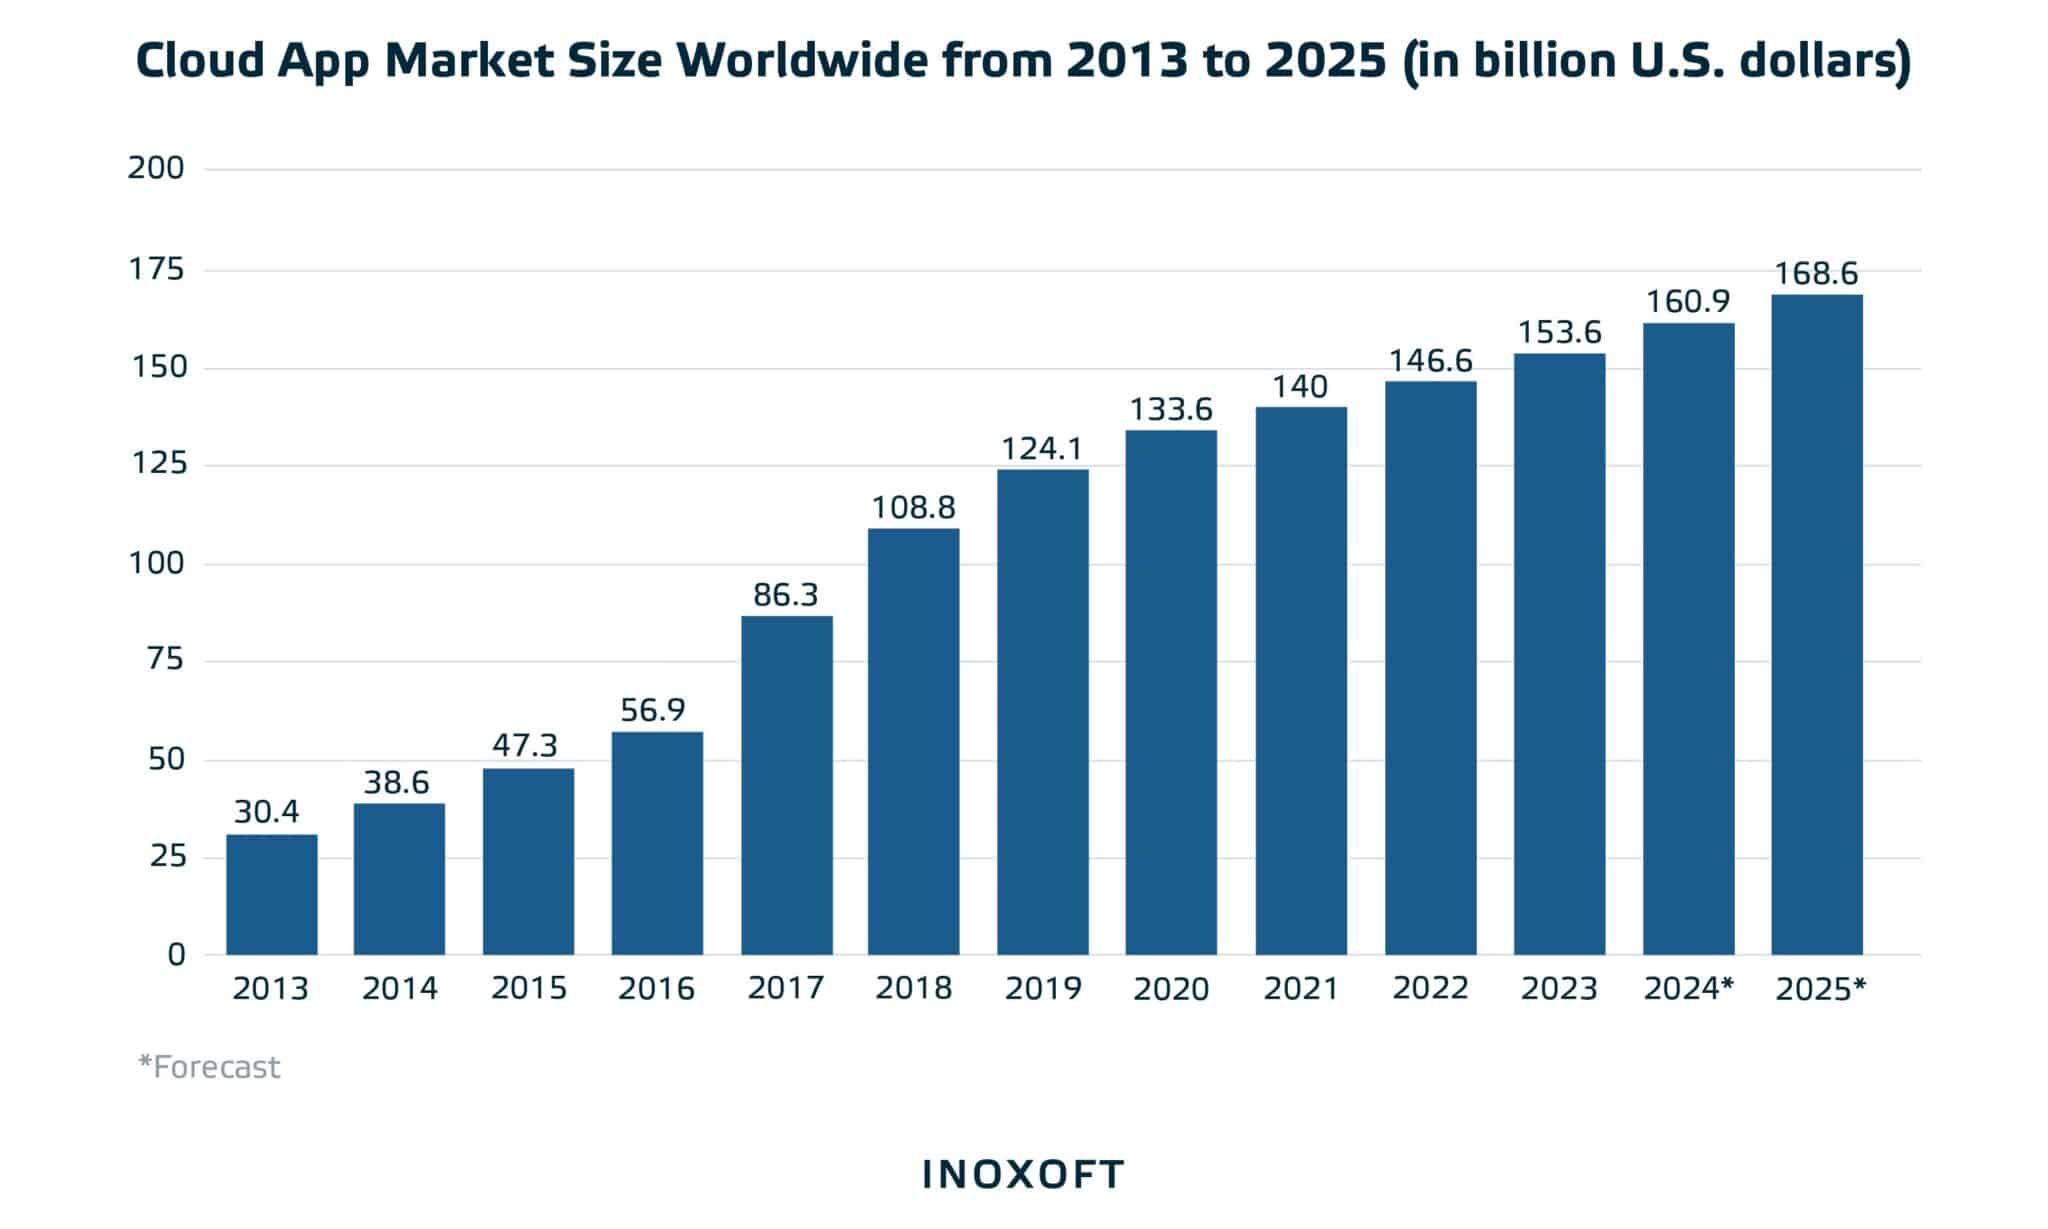 Cloud app market size worlwide from 2013 to 2025 (in billion U.S. dollars)